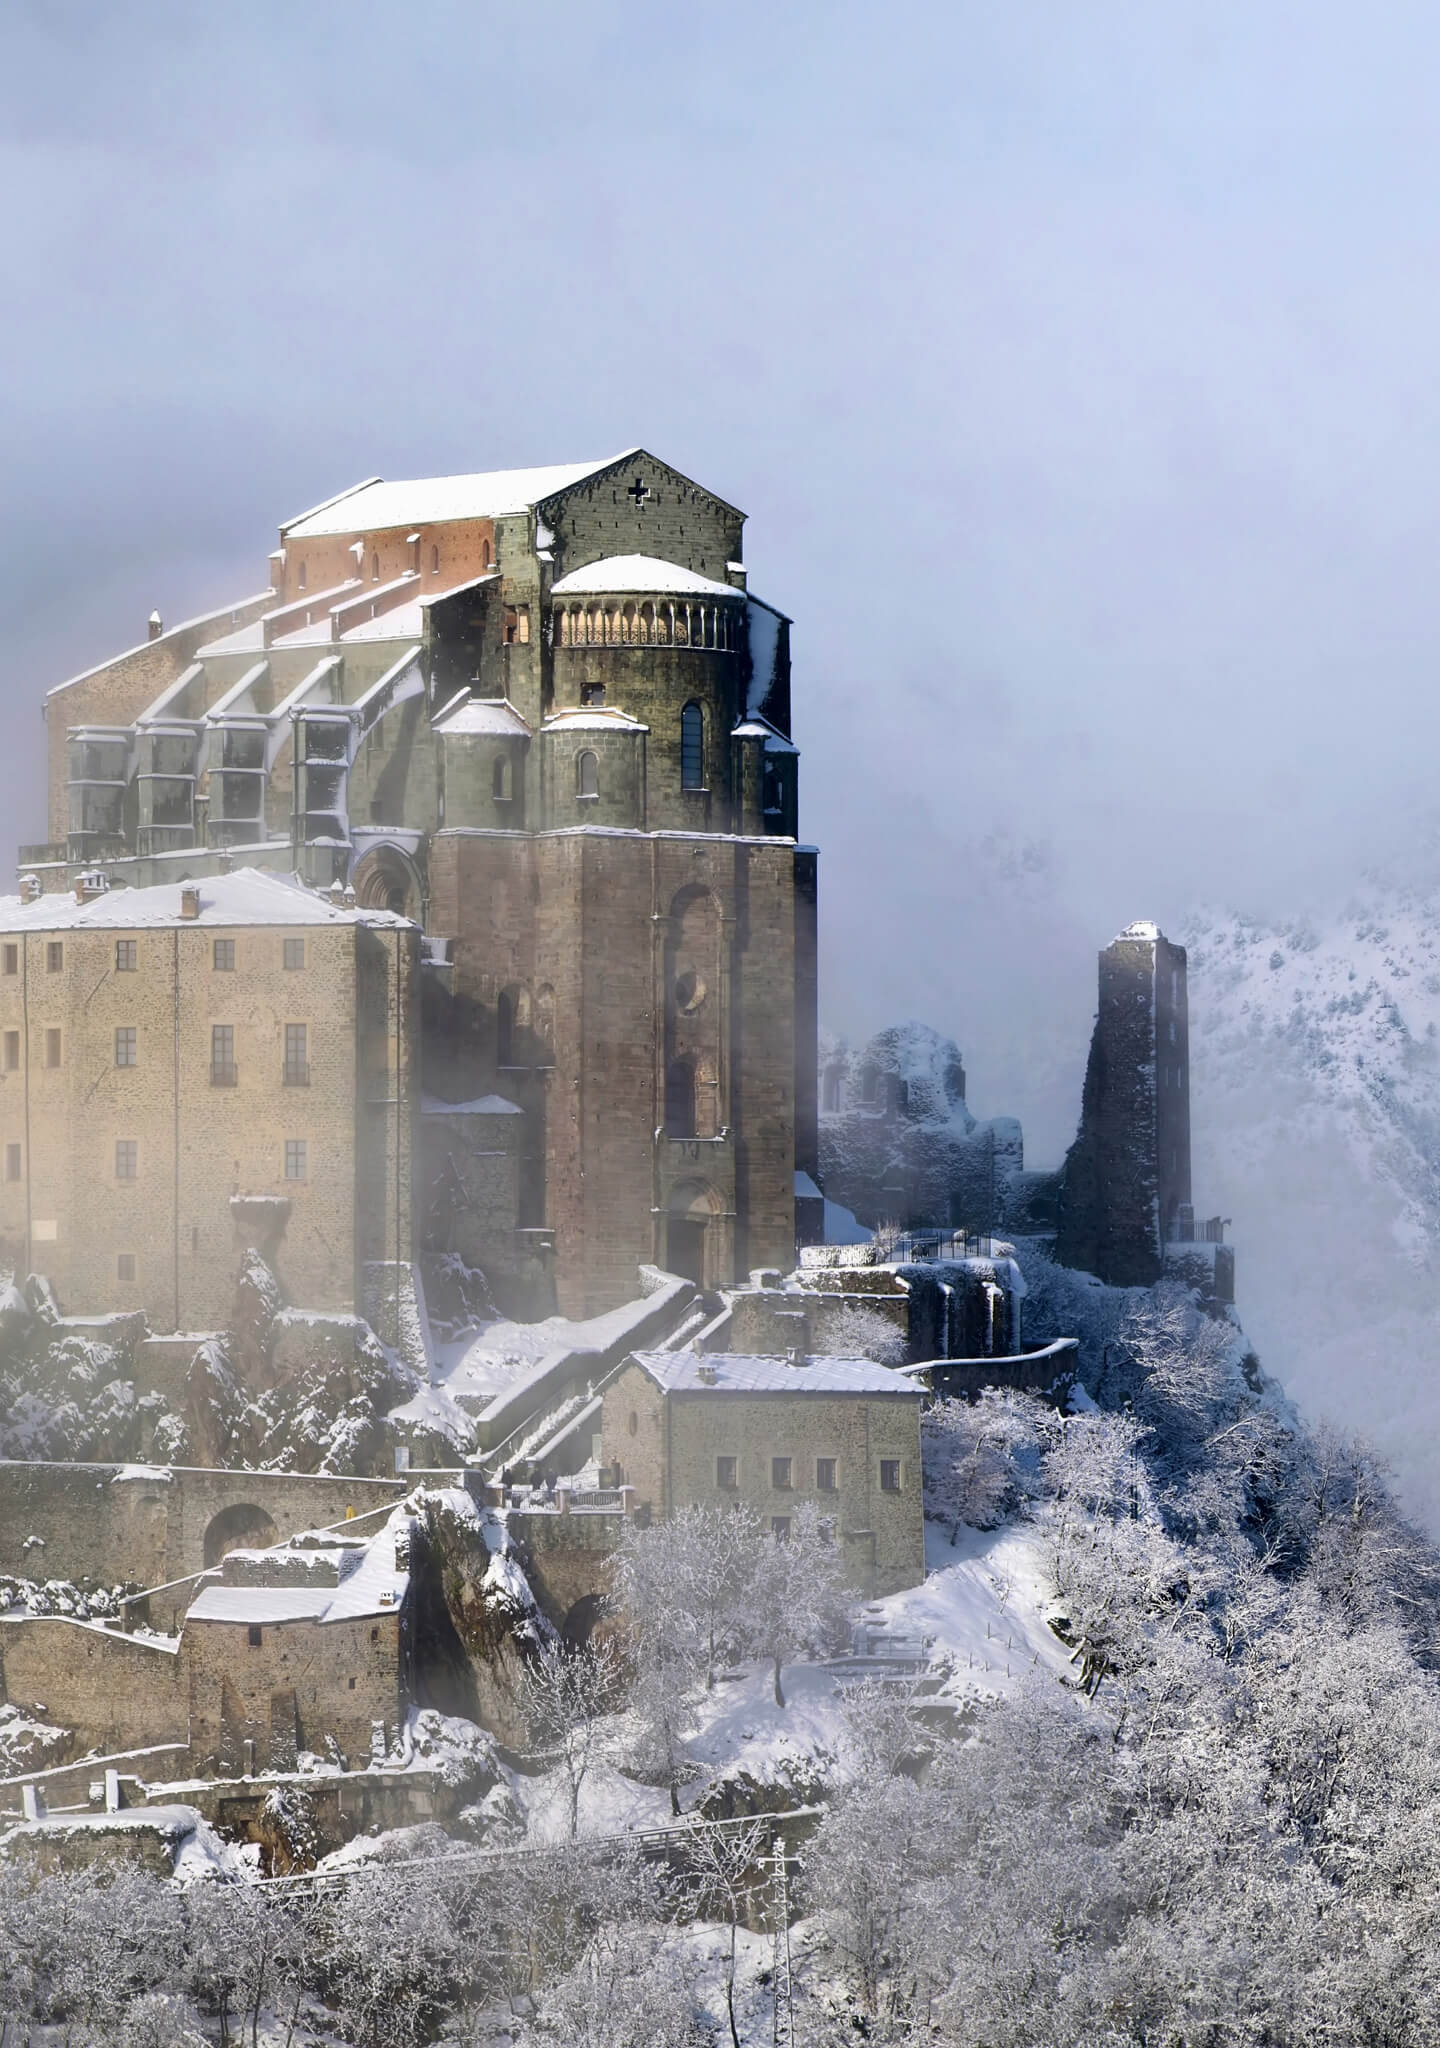 La abadía de San Michele nevada